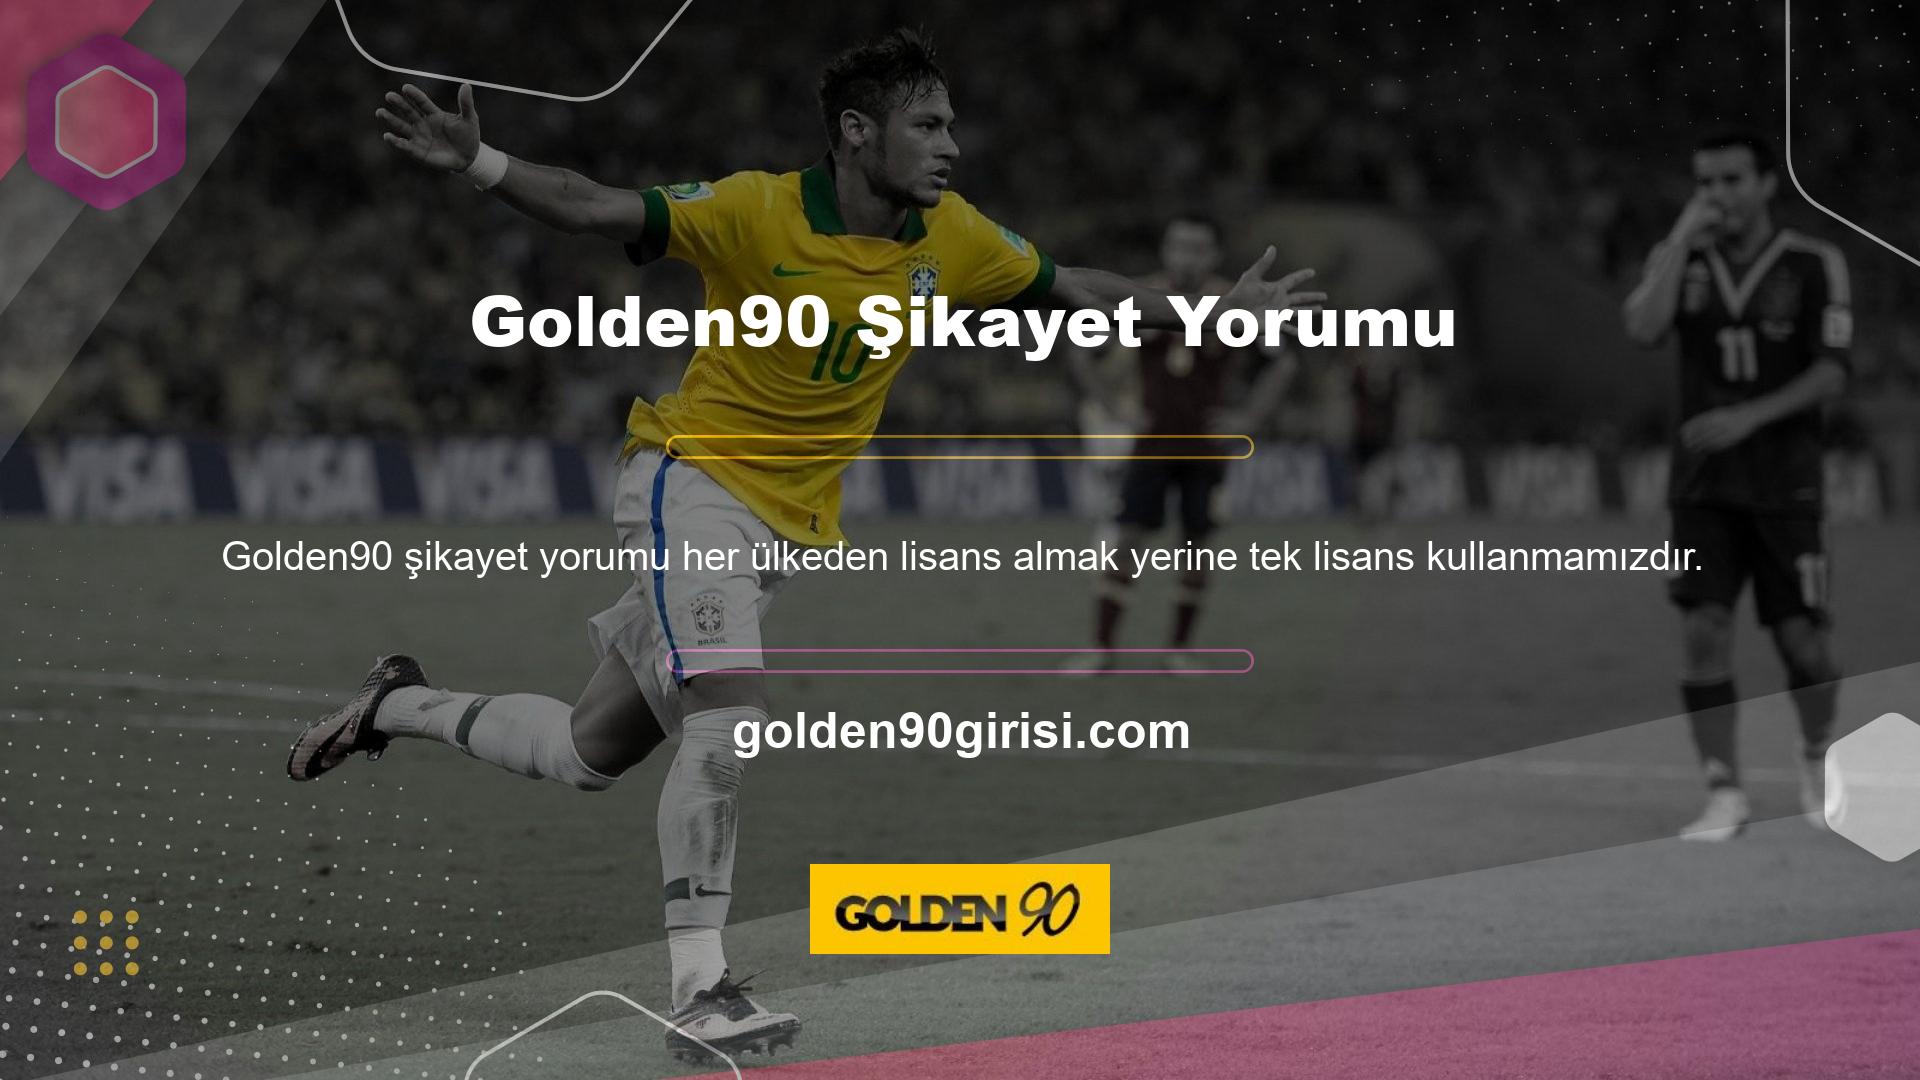 Bu giriş adresi değişiklikleri Golden90 tüm ülkelerde kesintisiz hizmet vermesini sağlayacaktır